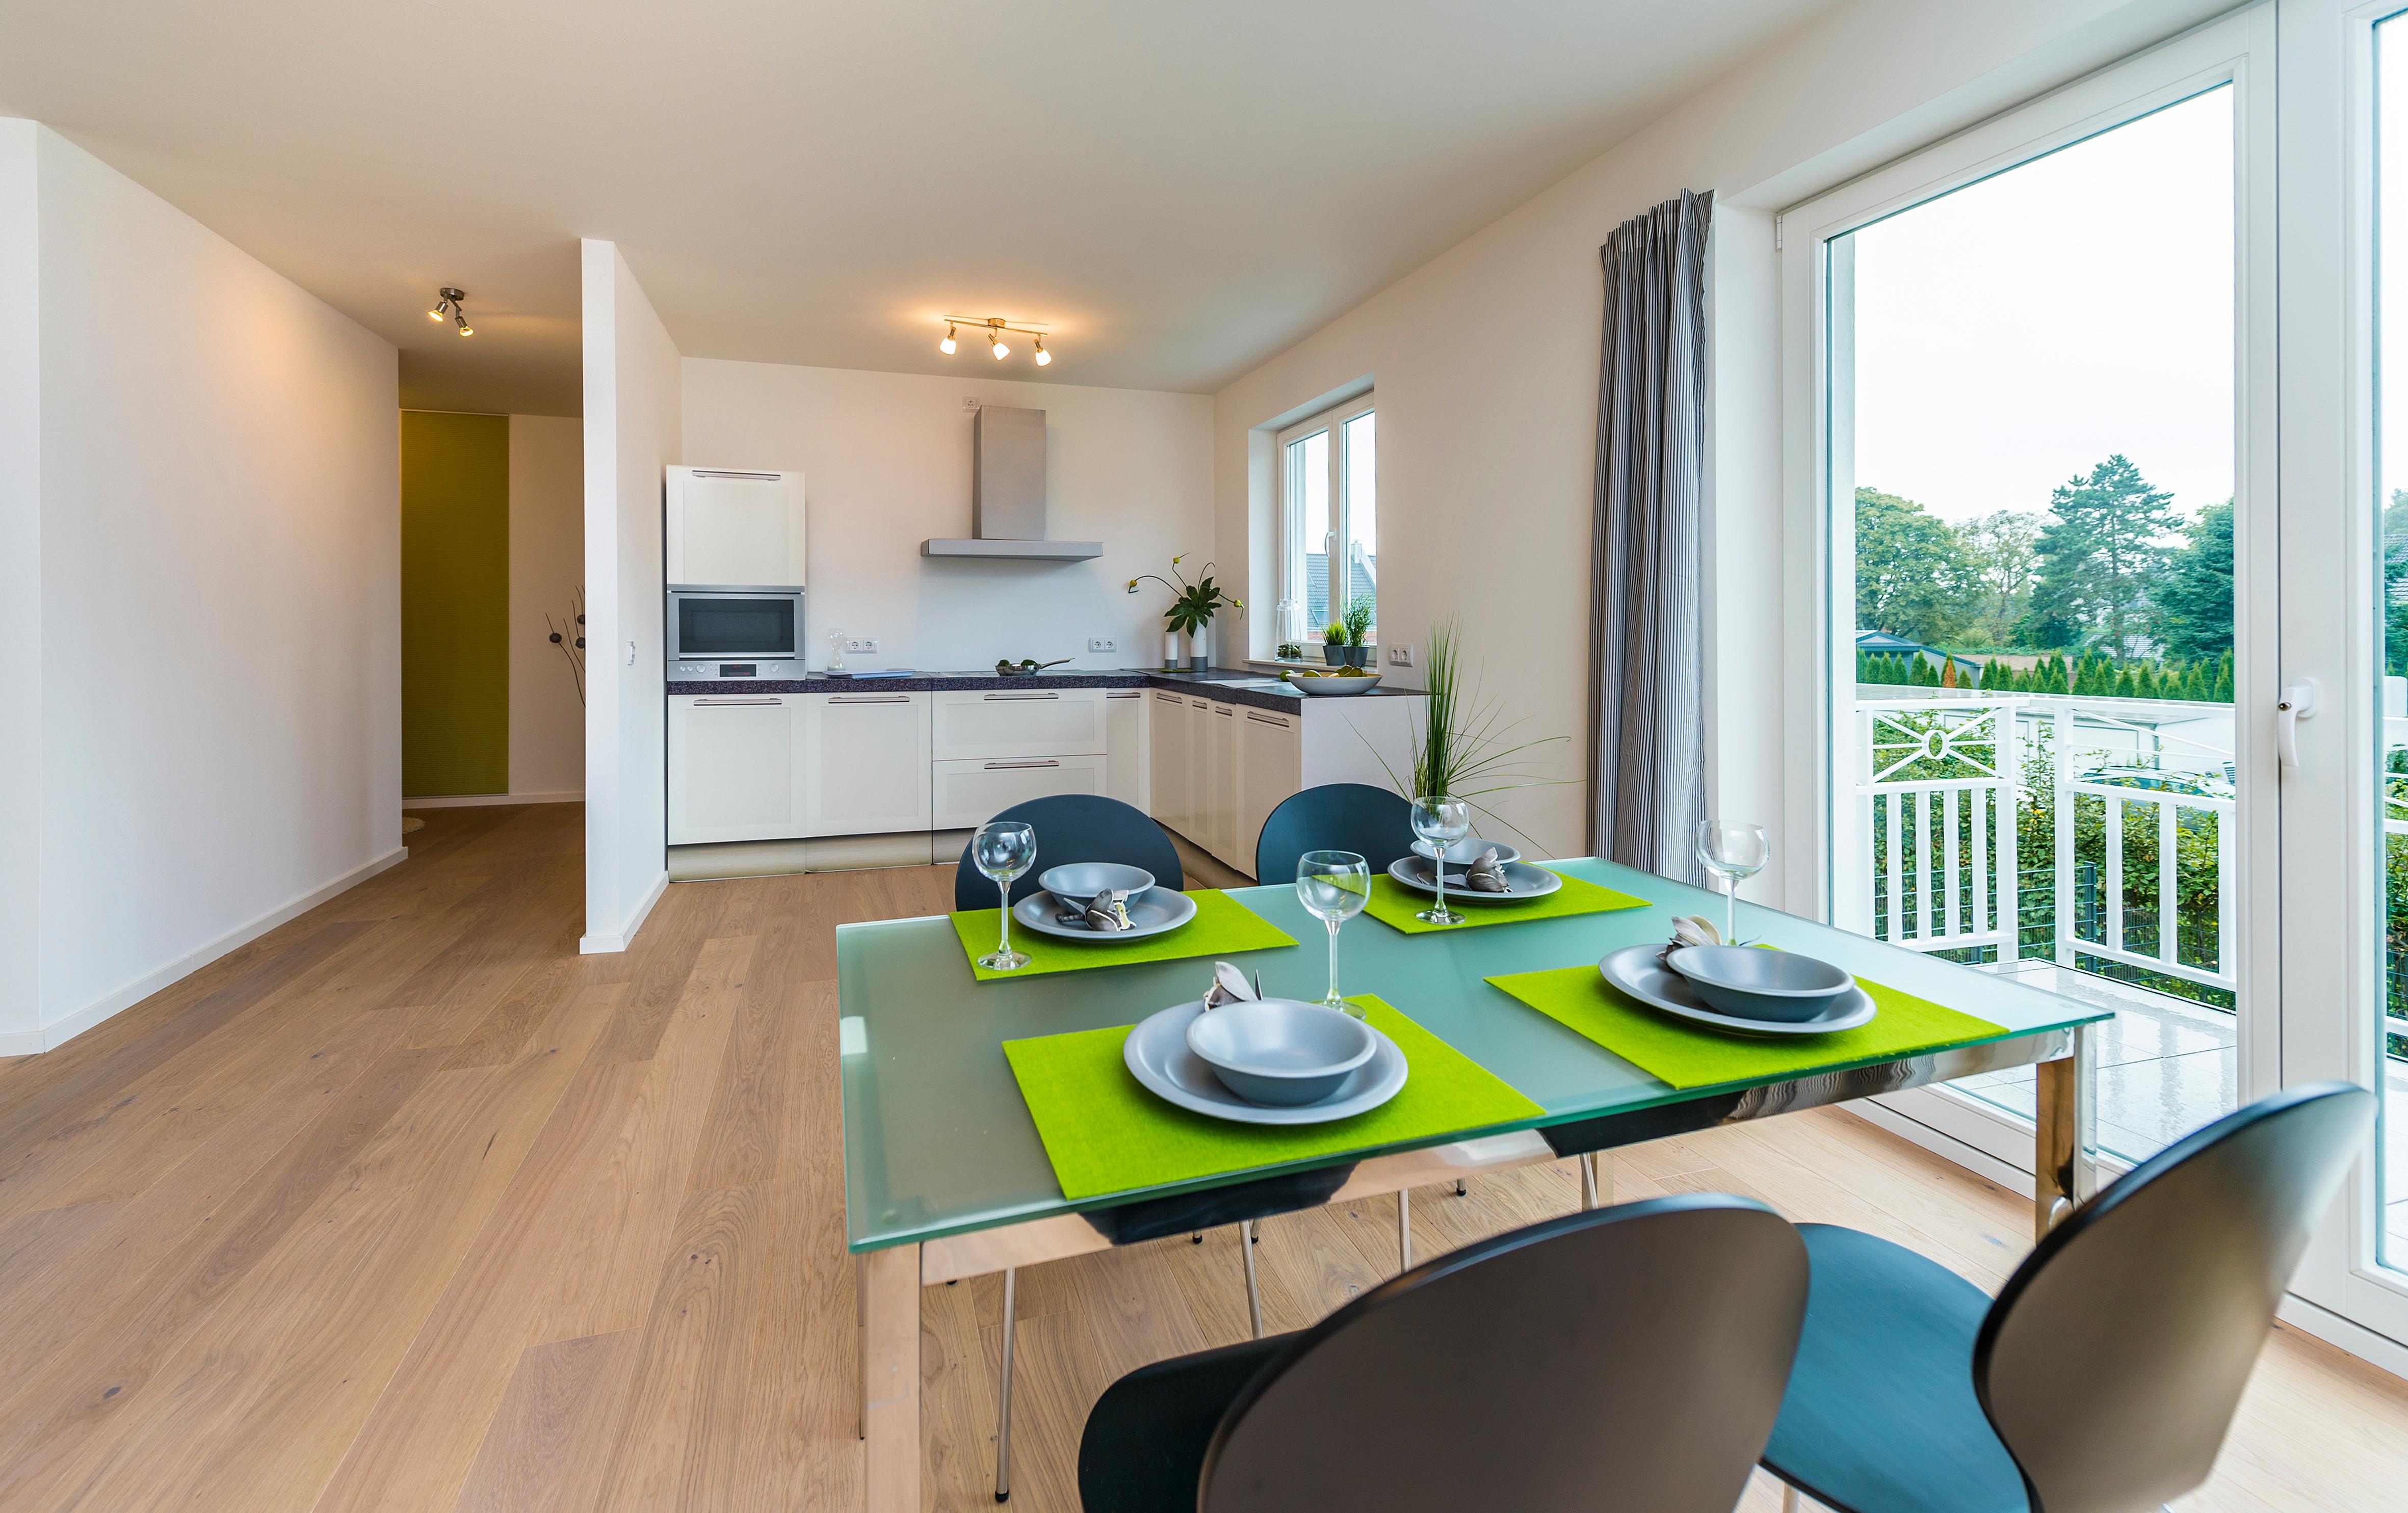 Home Staging - Küche/Essbereich #küche ©raumessenz homestaging